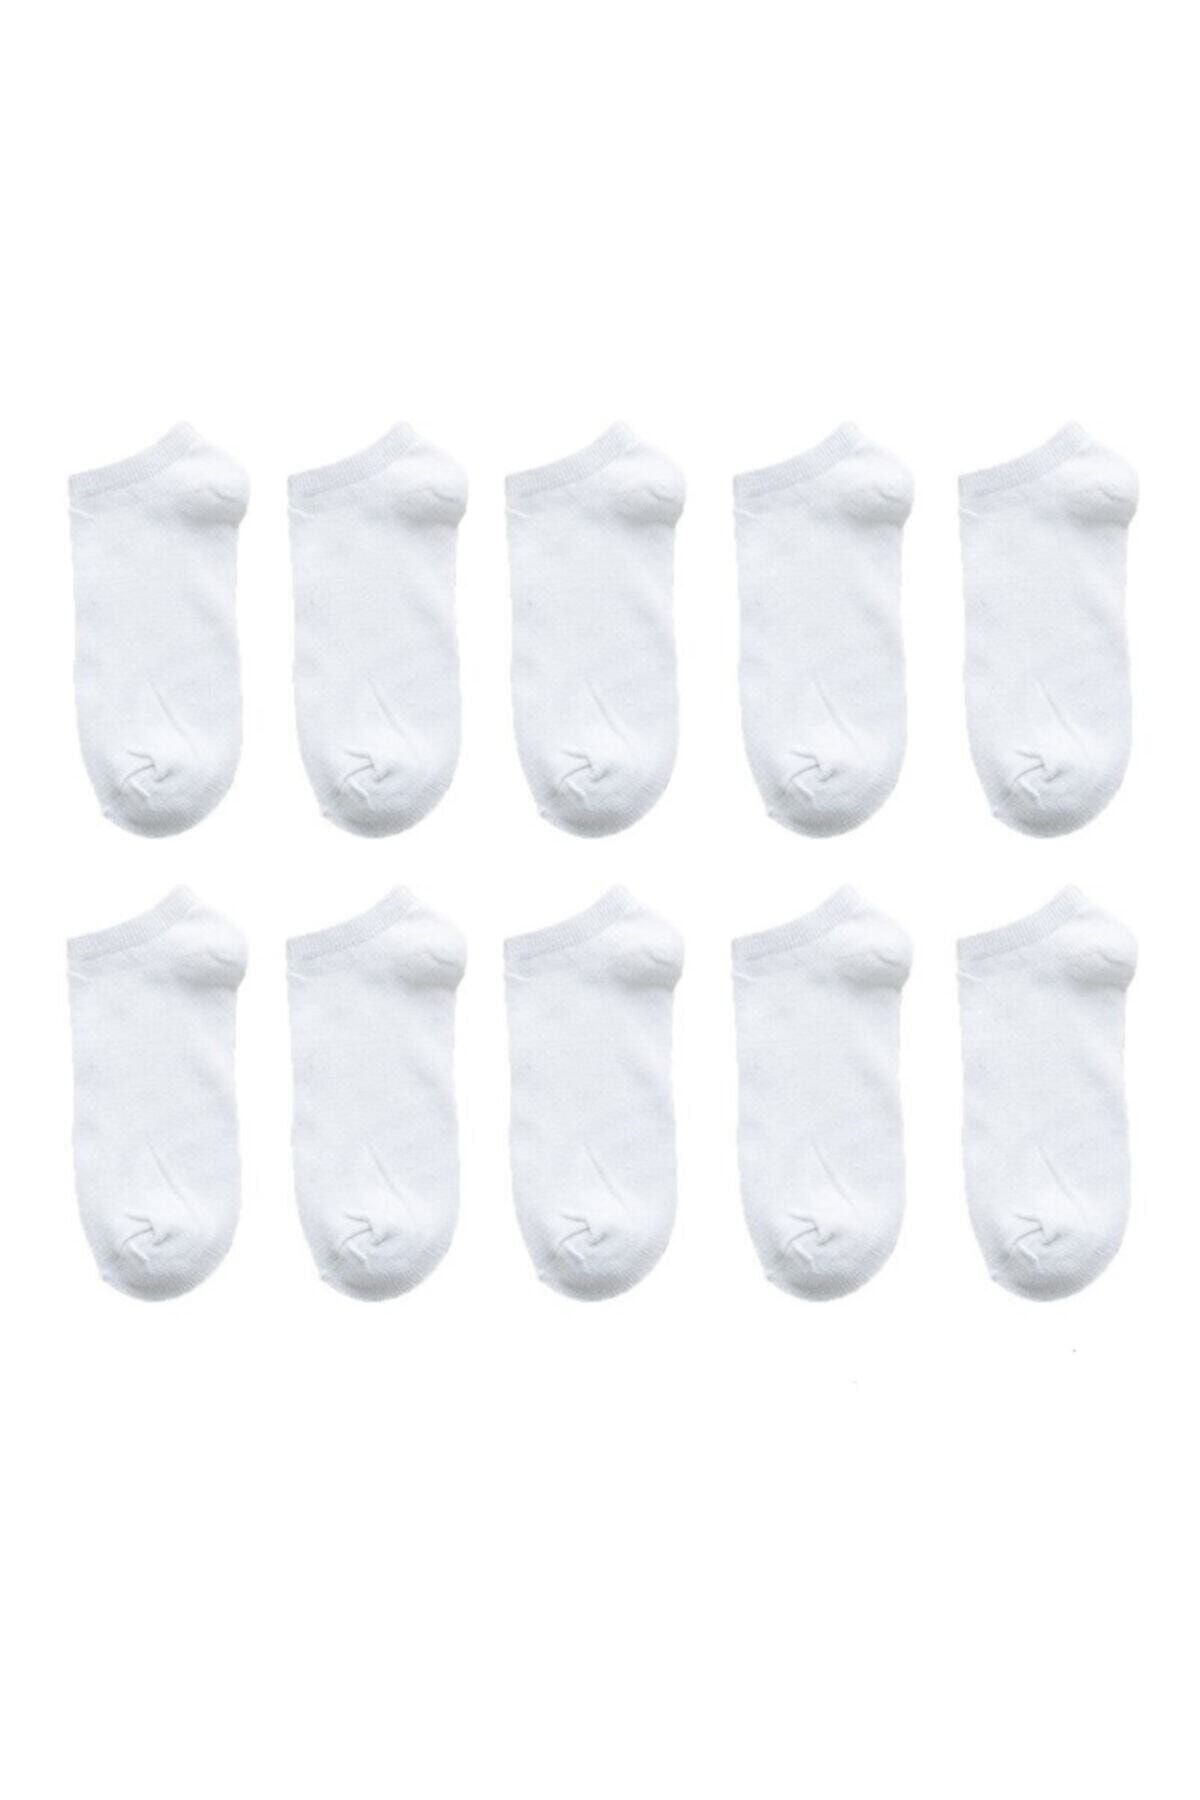 Nacar Unısex Beyaz Patik Çorap 10 Adet